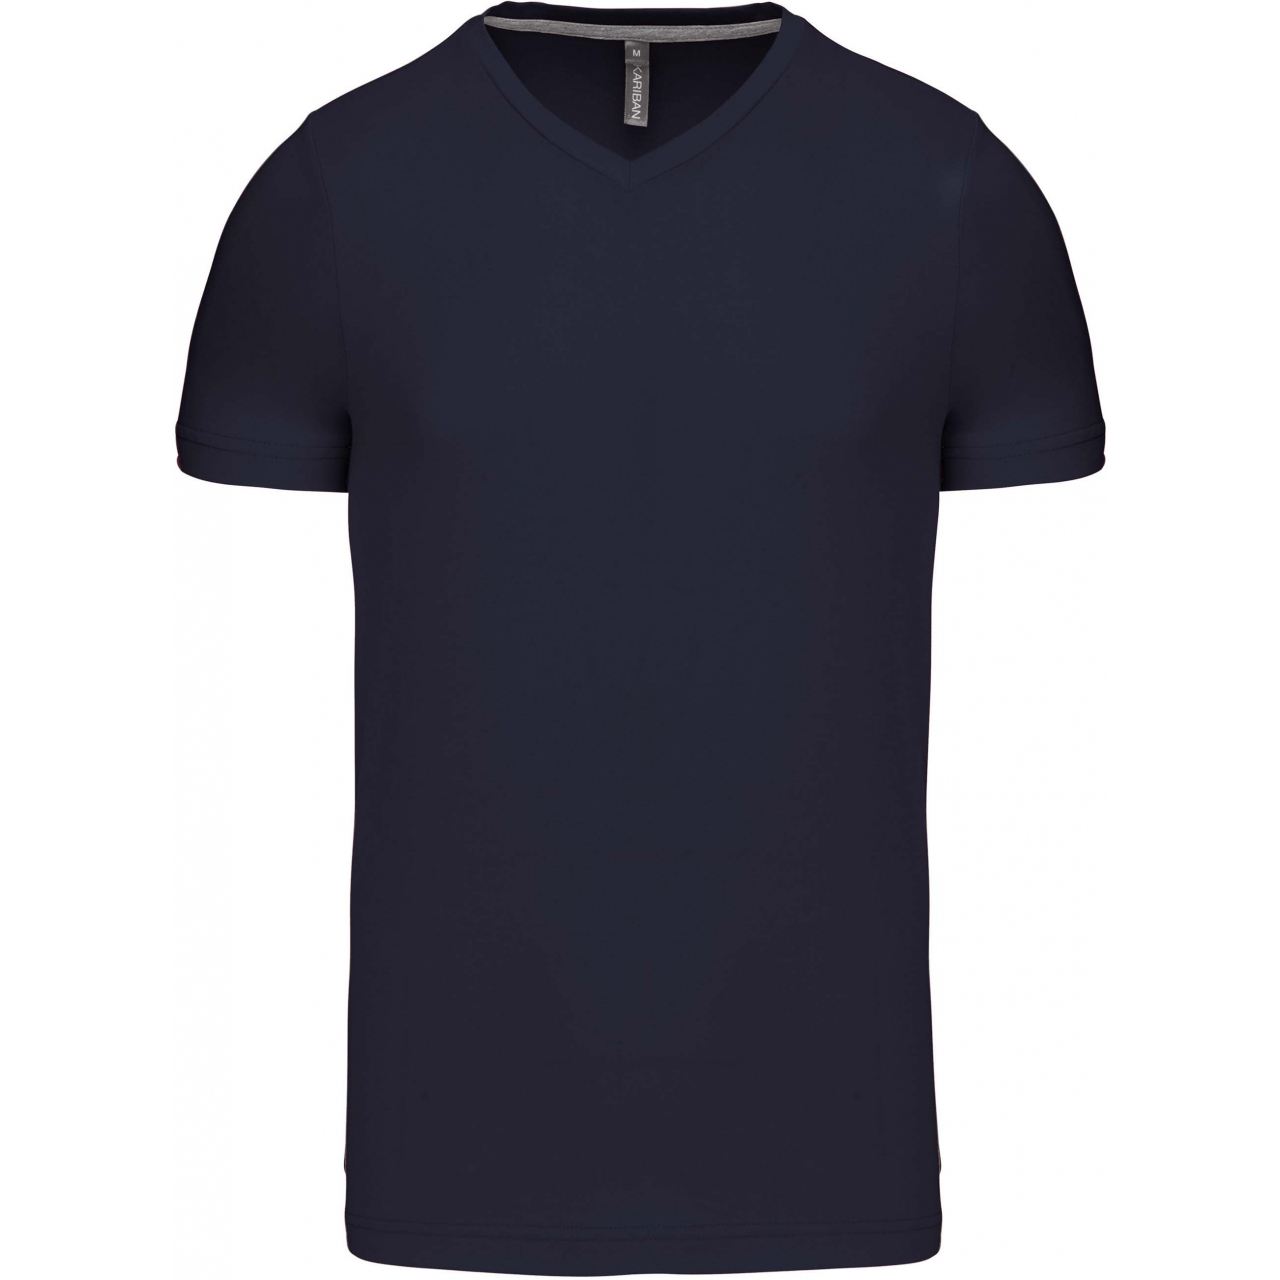 Pánské tričko Kariban krátký rukáv V-neck - navy, 3XL